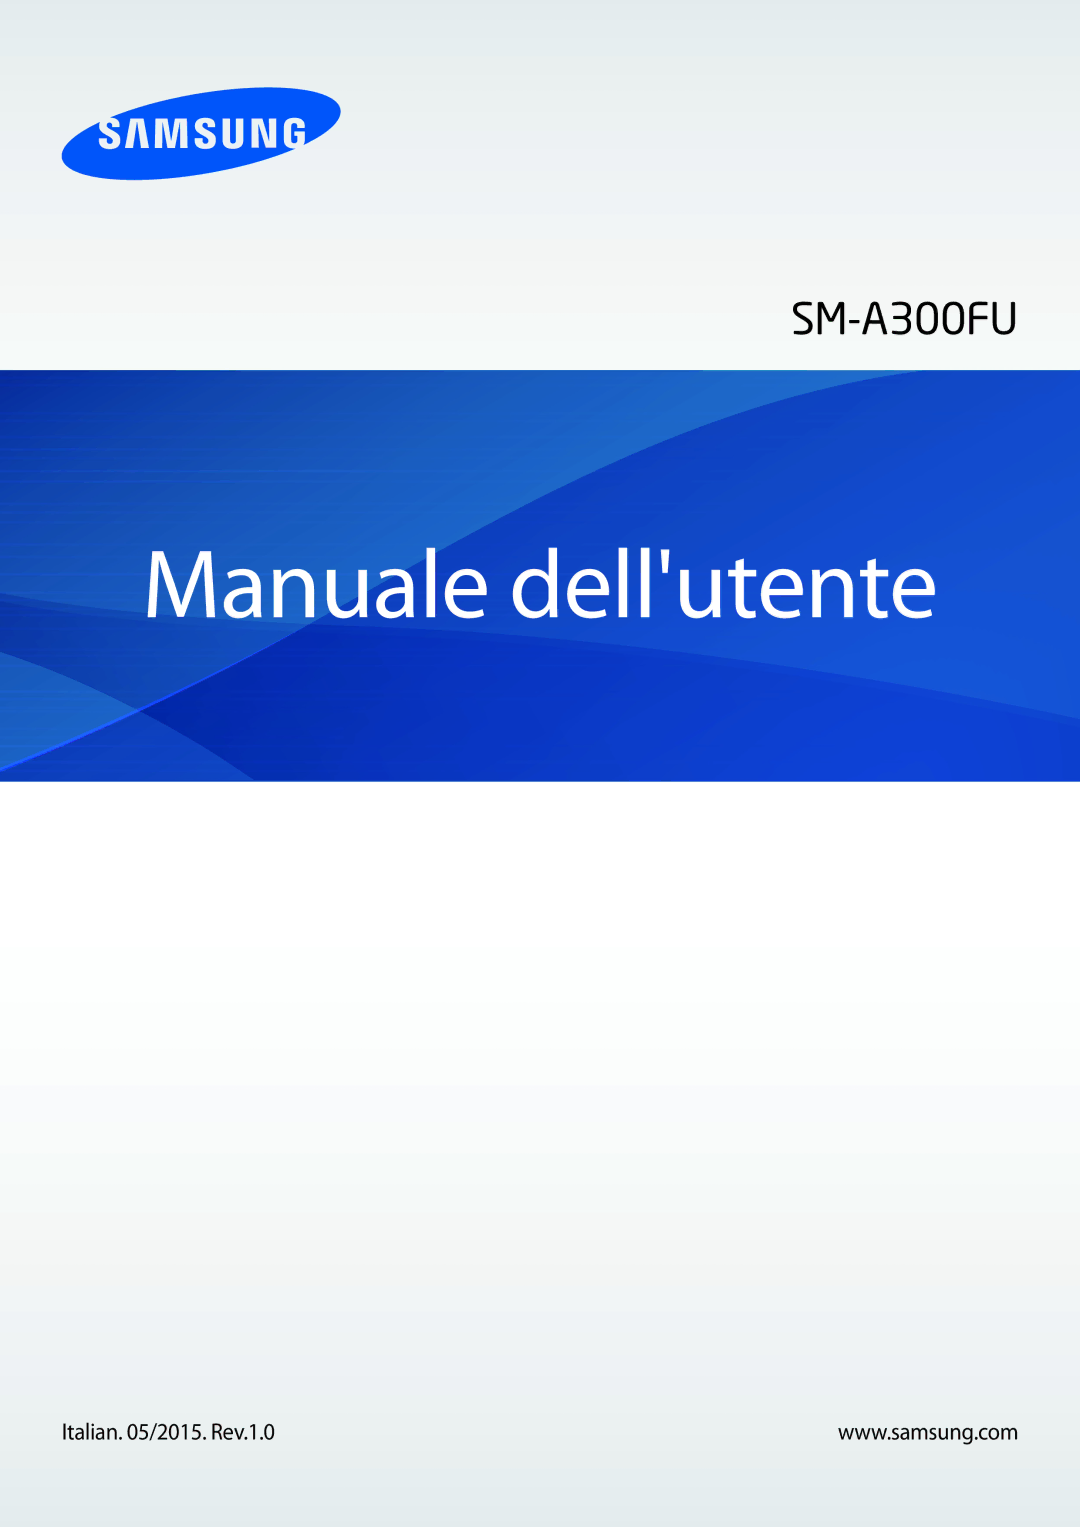 Samsung SM-A300FZWUDBT, SM-A300FZDUXEO, SM-A300FZKUDBT, SM-A300FZSUIDE, SM-A300FZWUDPL manual Manuale dellutente 